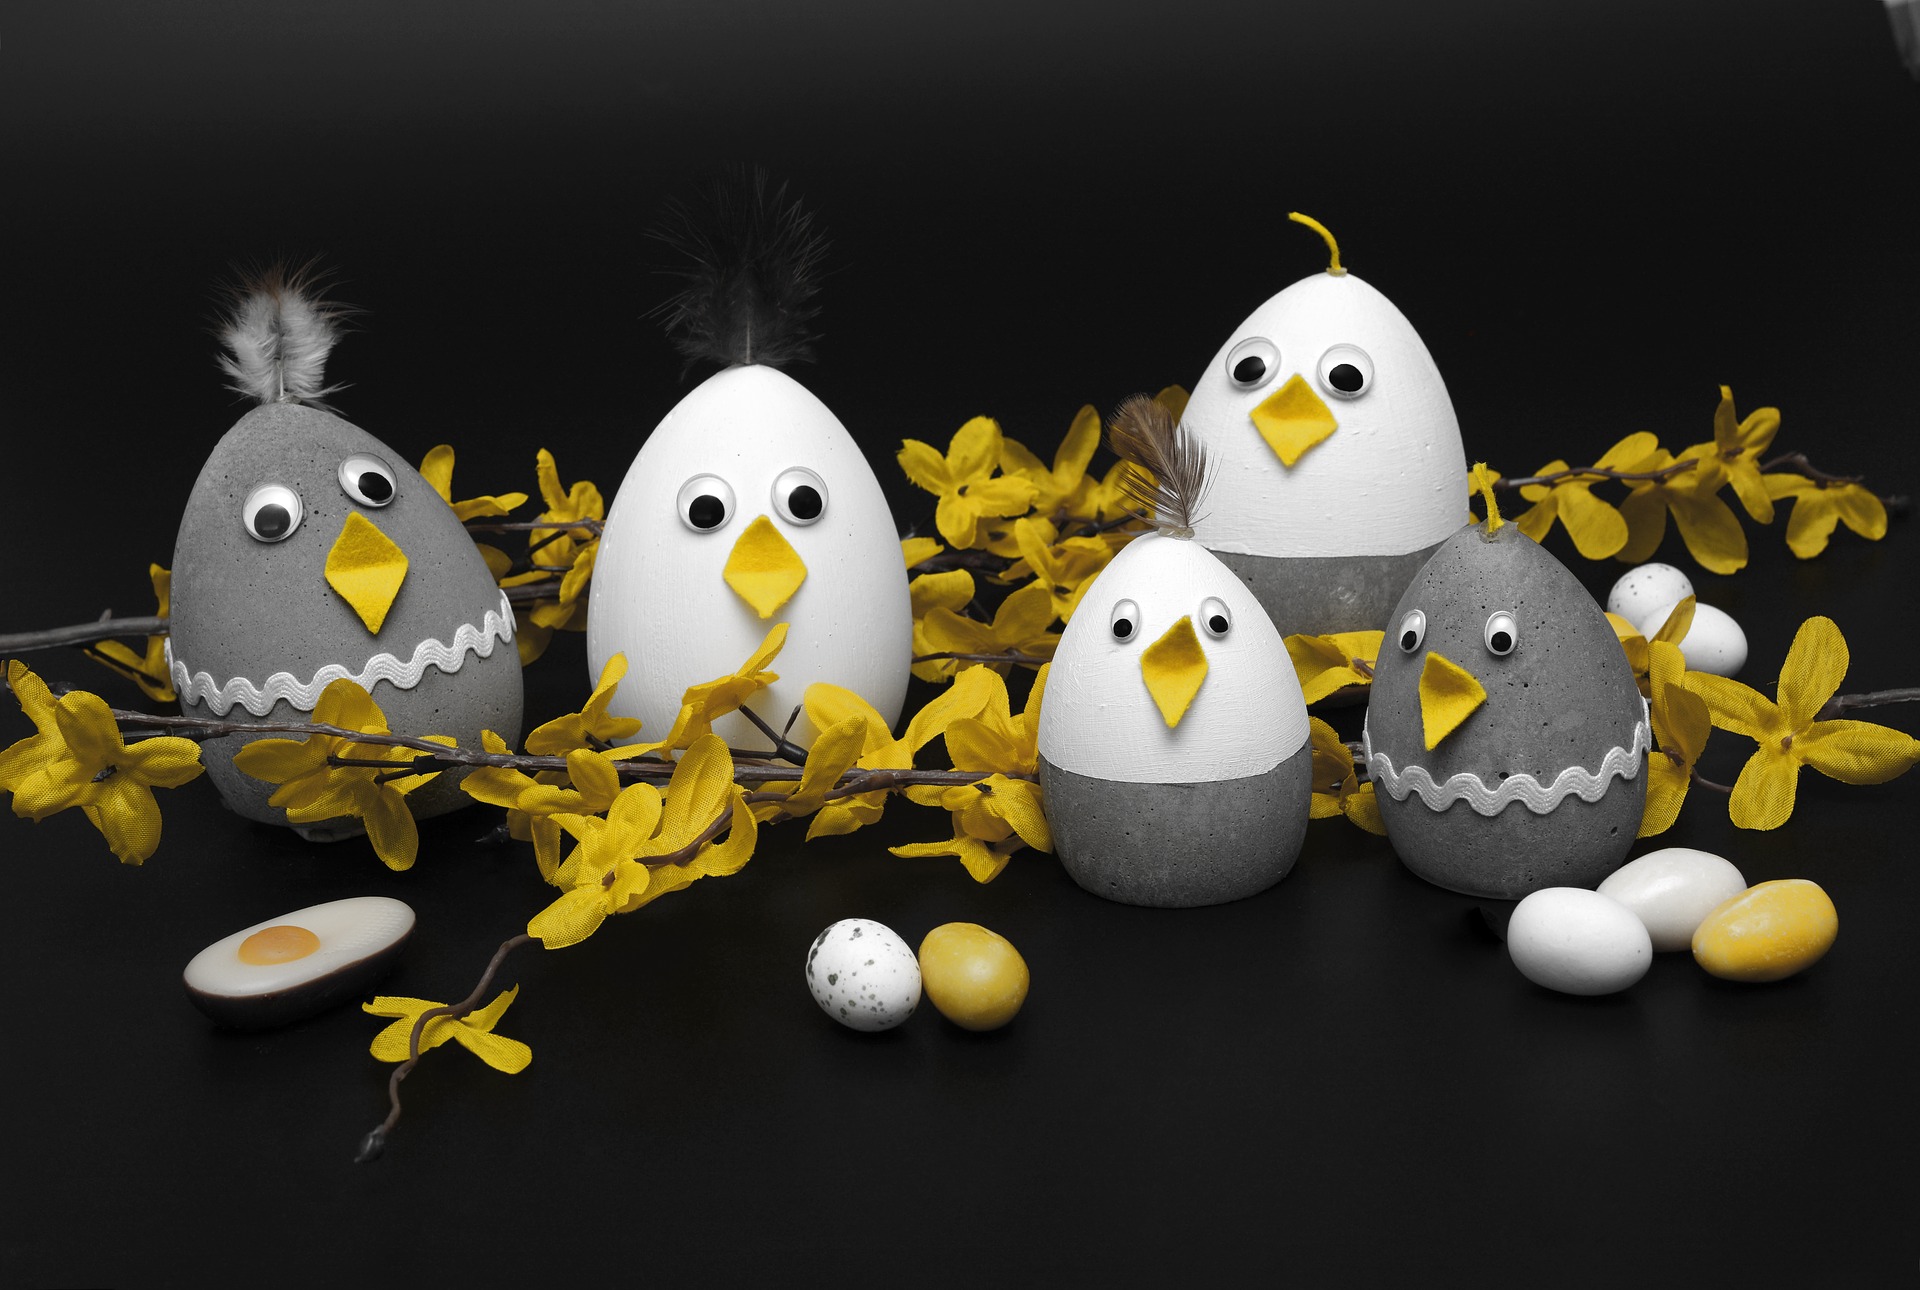 Descarga gratis la imagen Pascua, Día Festivo en el escritorio de tu PC